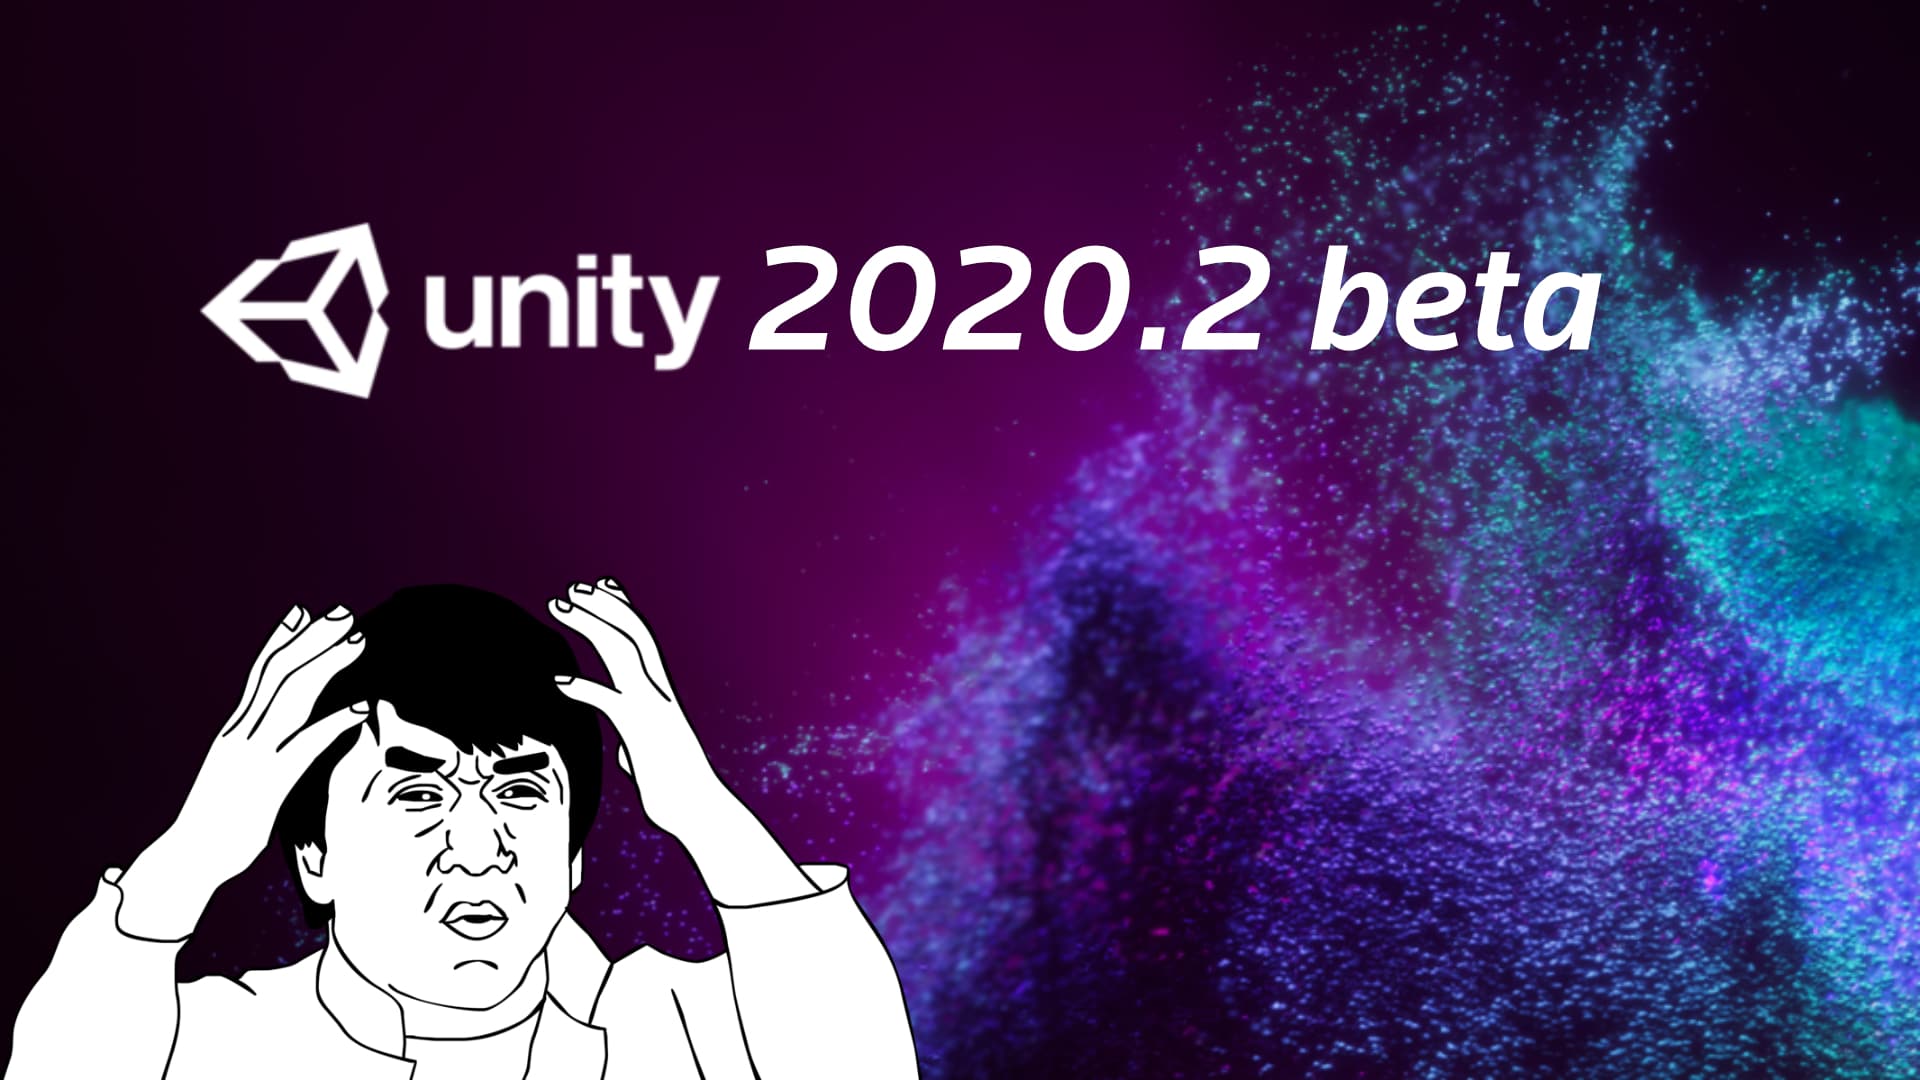 unity 2020